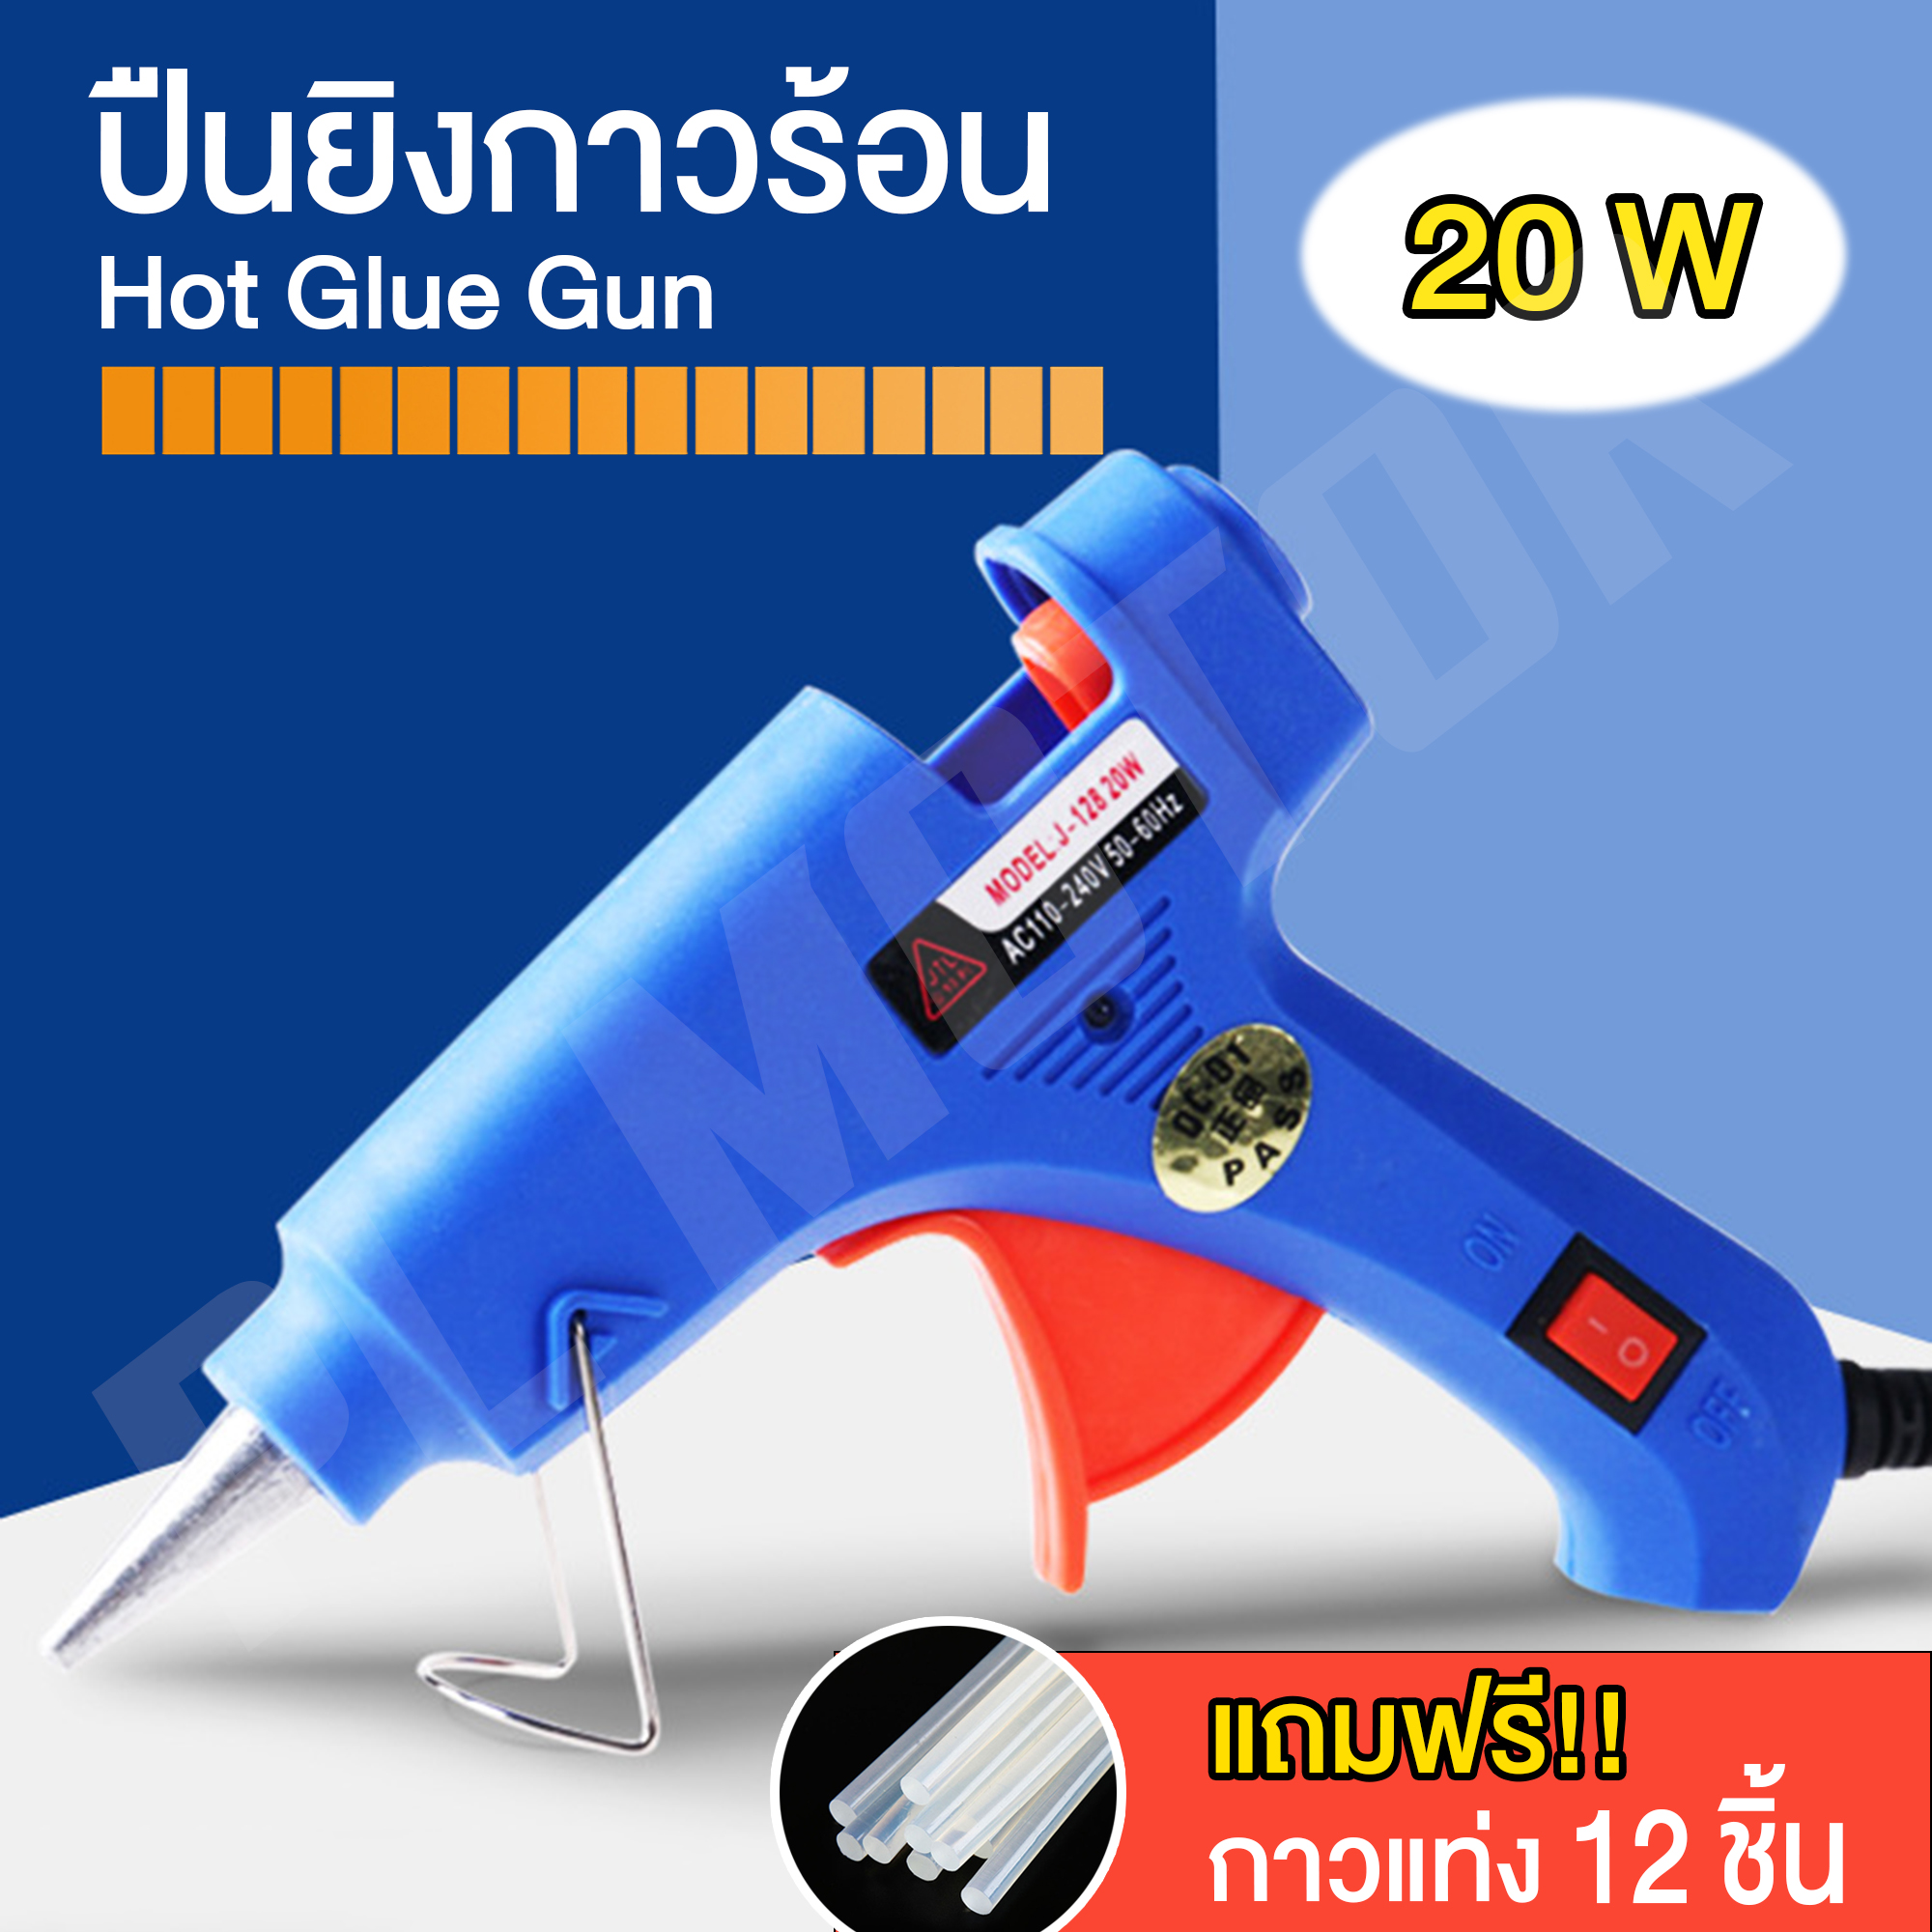 ปืนยิงกาวร้อน ปืนกาวแท่ง ปืนยิงกาว Super Hot Glue 20W [ แถมกาวแท่ง 12 ชิ้น ] สำหรับกาวแท่ง 7 mm